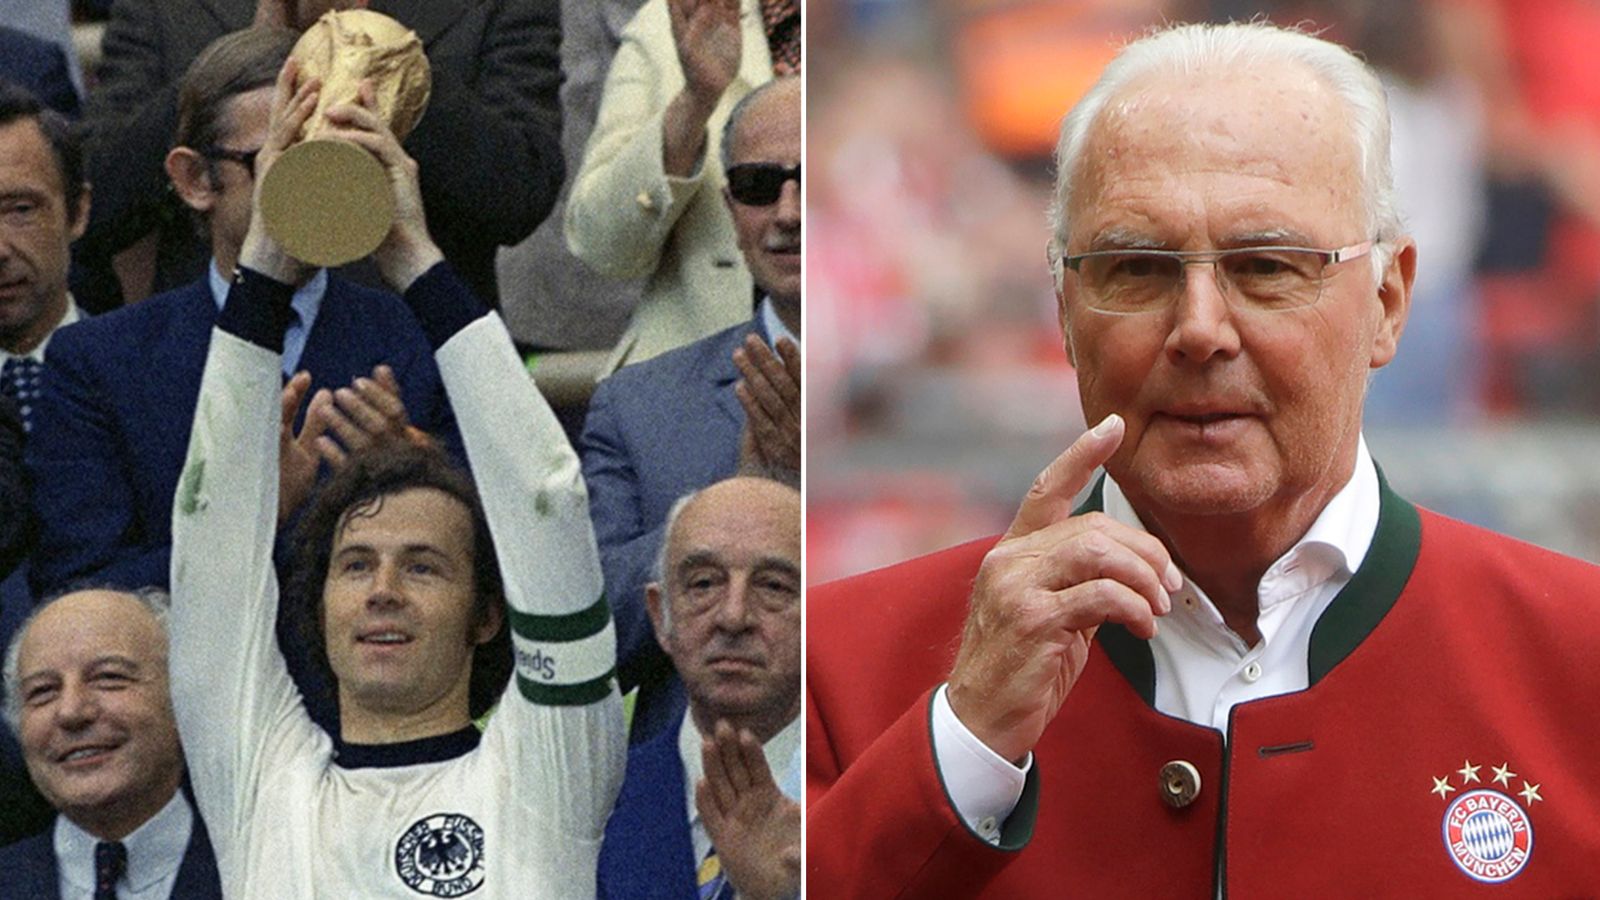 Franz Beckenbauer: Der Kapitän und Manager, der die Weltmeisterschaft gewonnen hat, ist gestorben, während der Fußball ihm Tribut zollt |  Weltnachrichten